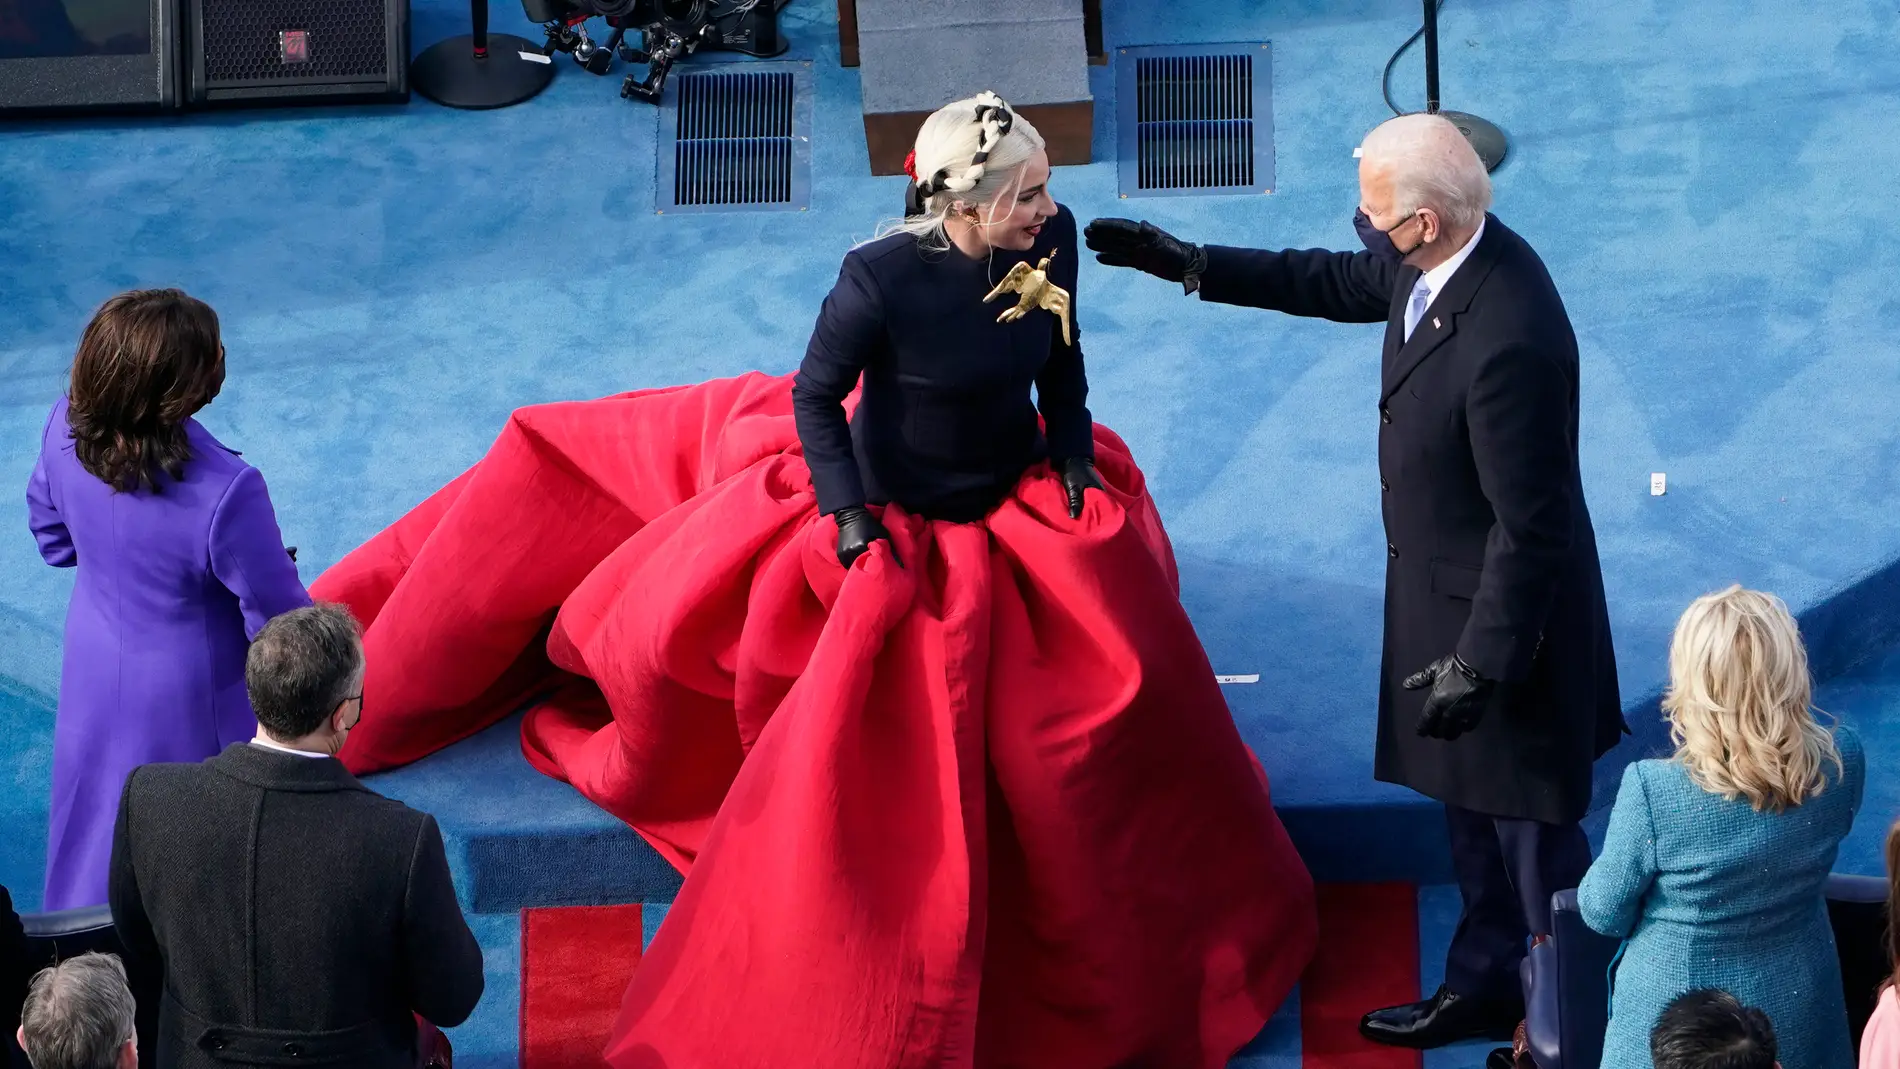 El secreto del vestido que Lady Gaga llevó a la investidura de Joe Biden